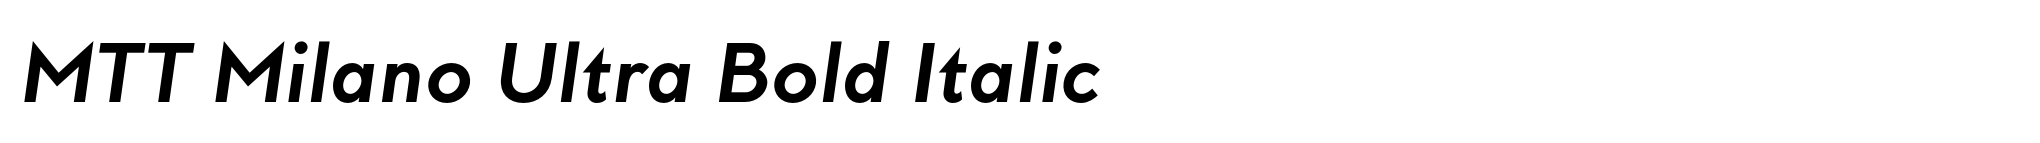 MTT Milano Ultra Bold Italic image